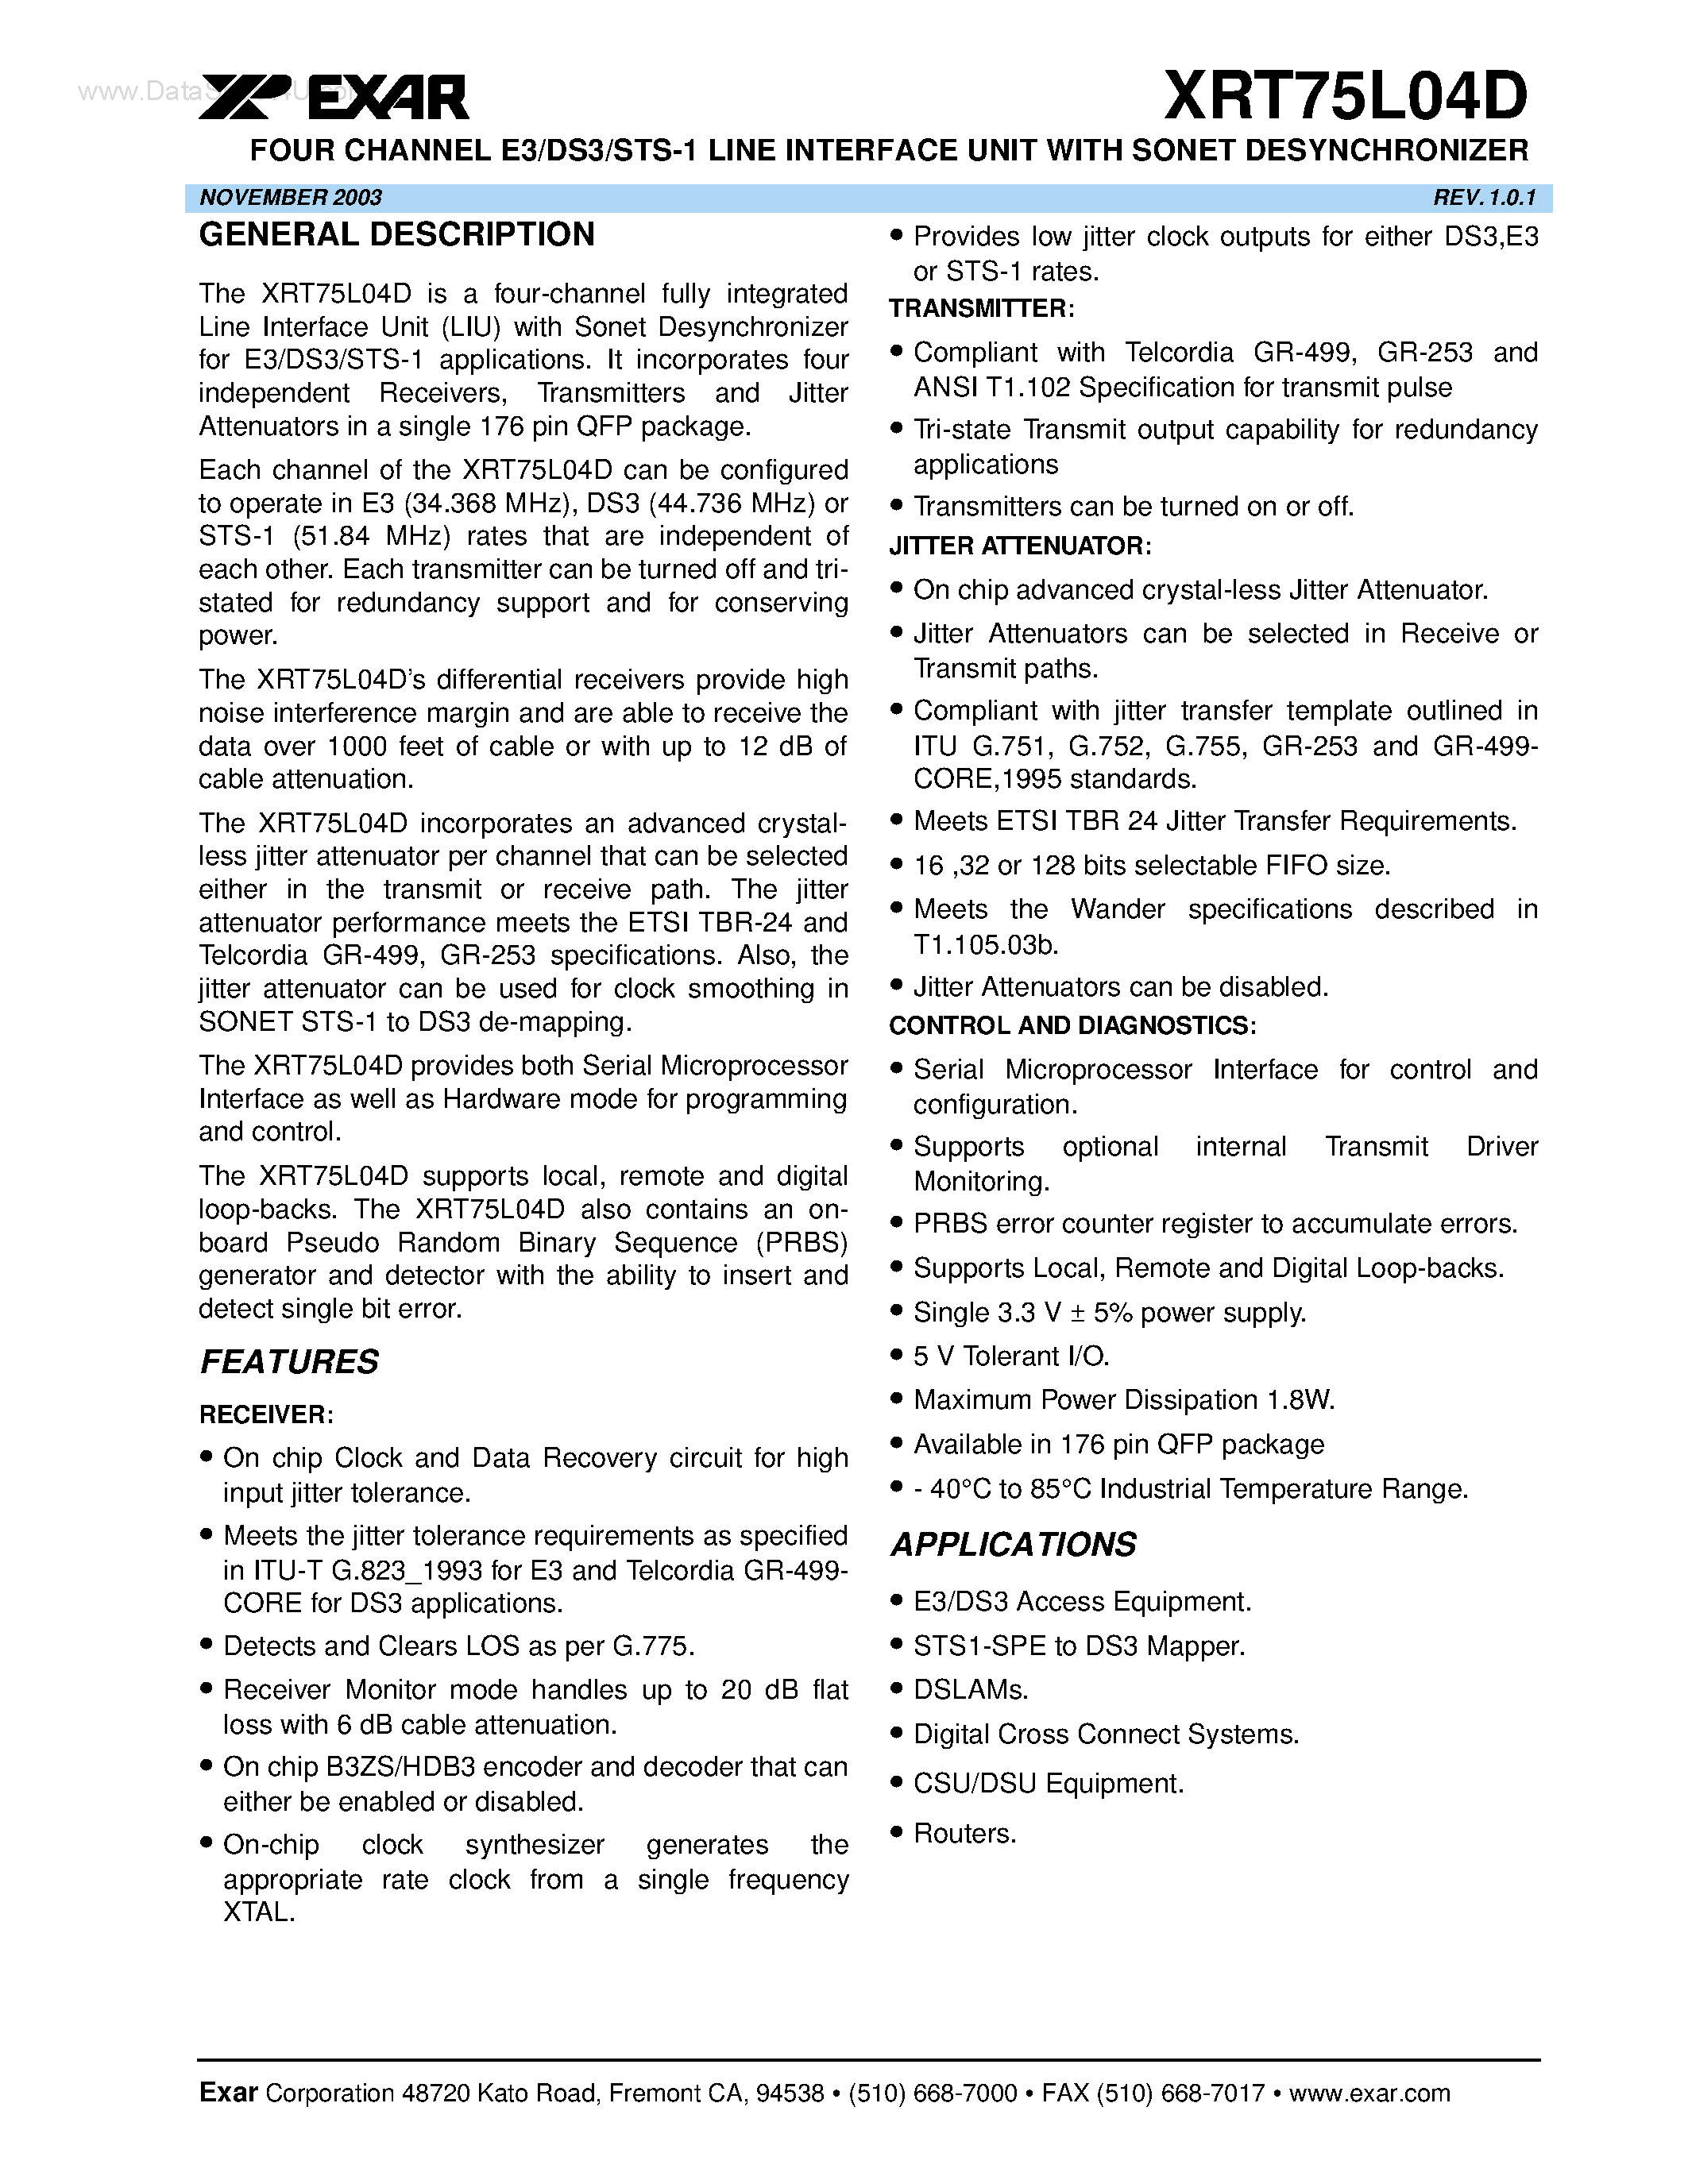 Datasheet XRT75L04D - FOUR CHANNEL E3/DS3/STS-1 LINE INTERFACE UNIT page 1